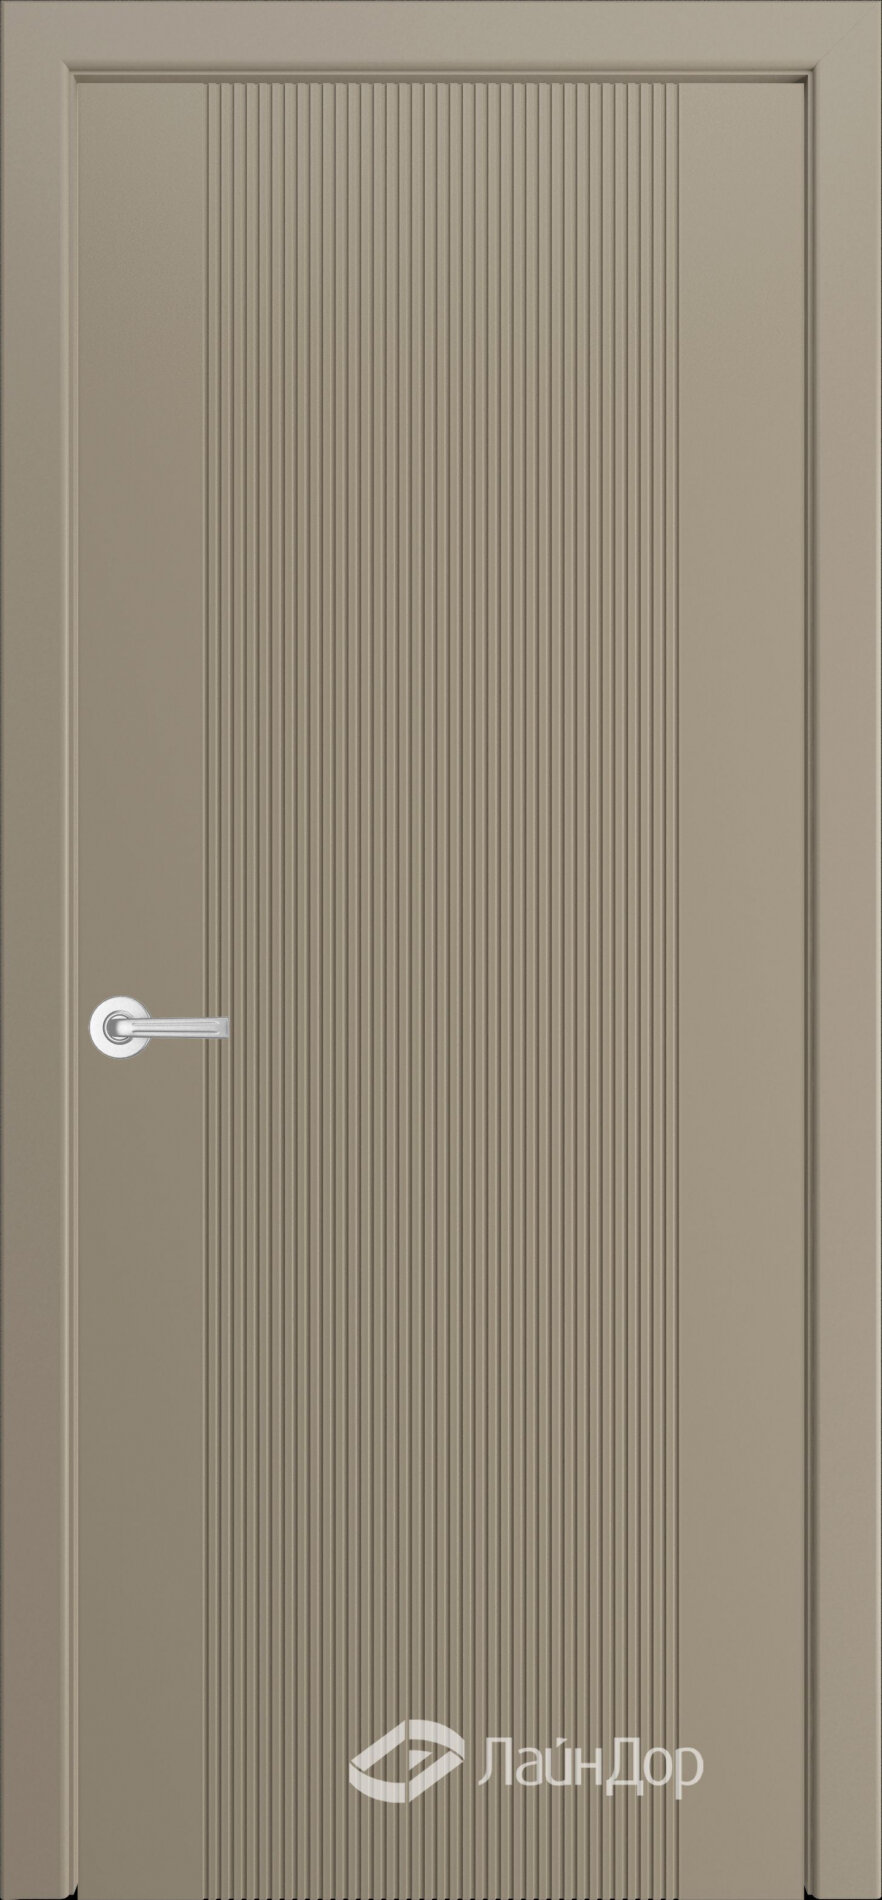 Межкомнатная дверь Лайндор Ривьера 2 эмаль